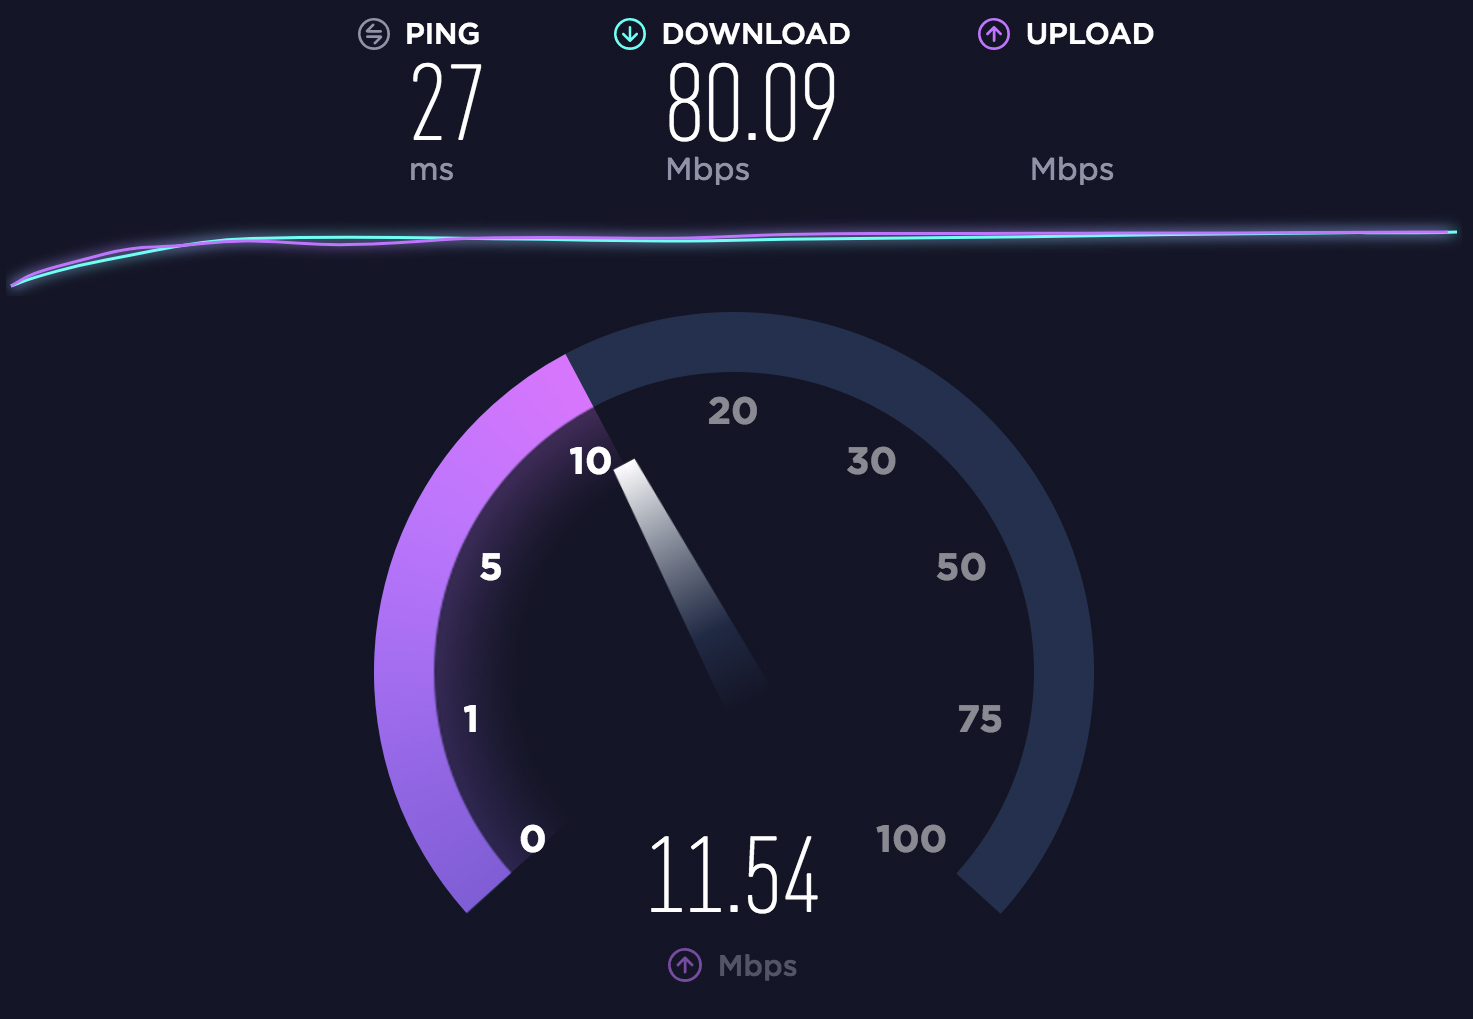 should internet speed test have higher download or upload